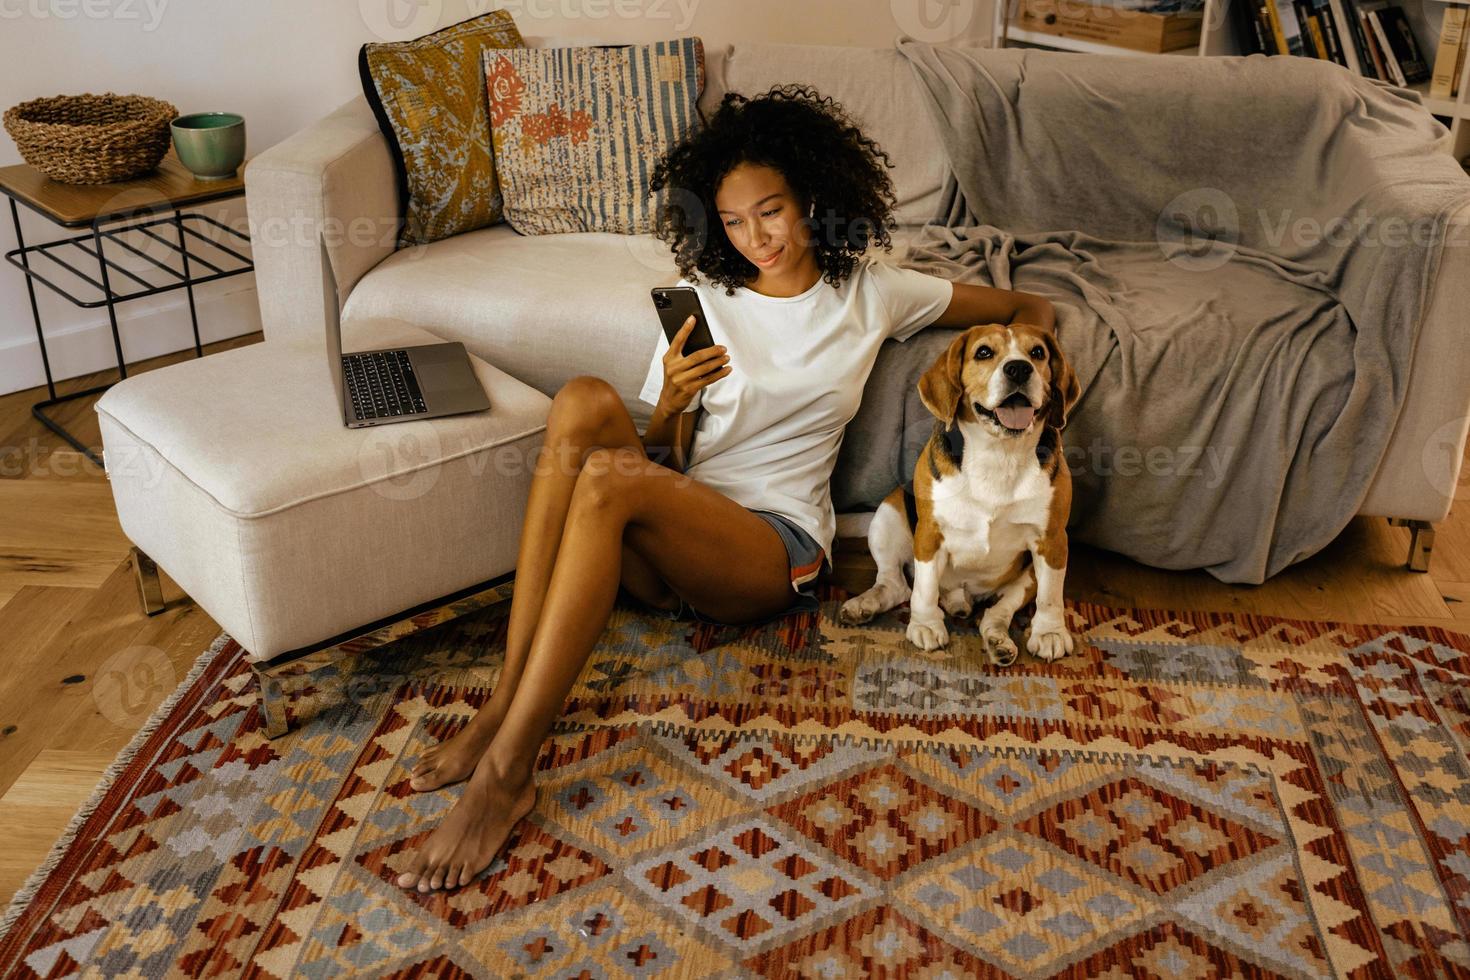 donna nera che usa il cellulare e accarezza il suo cane mentre è seduta sul pavimento foto